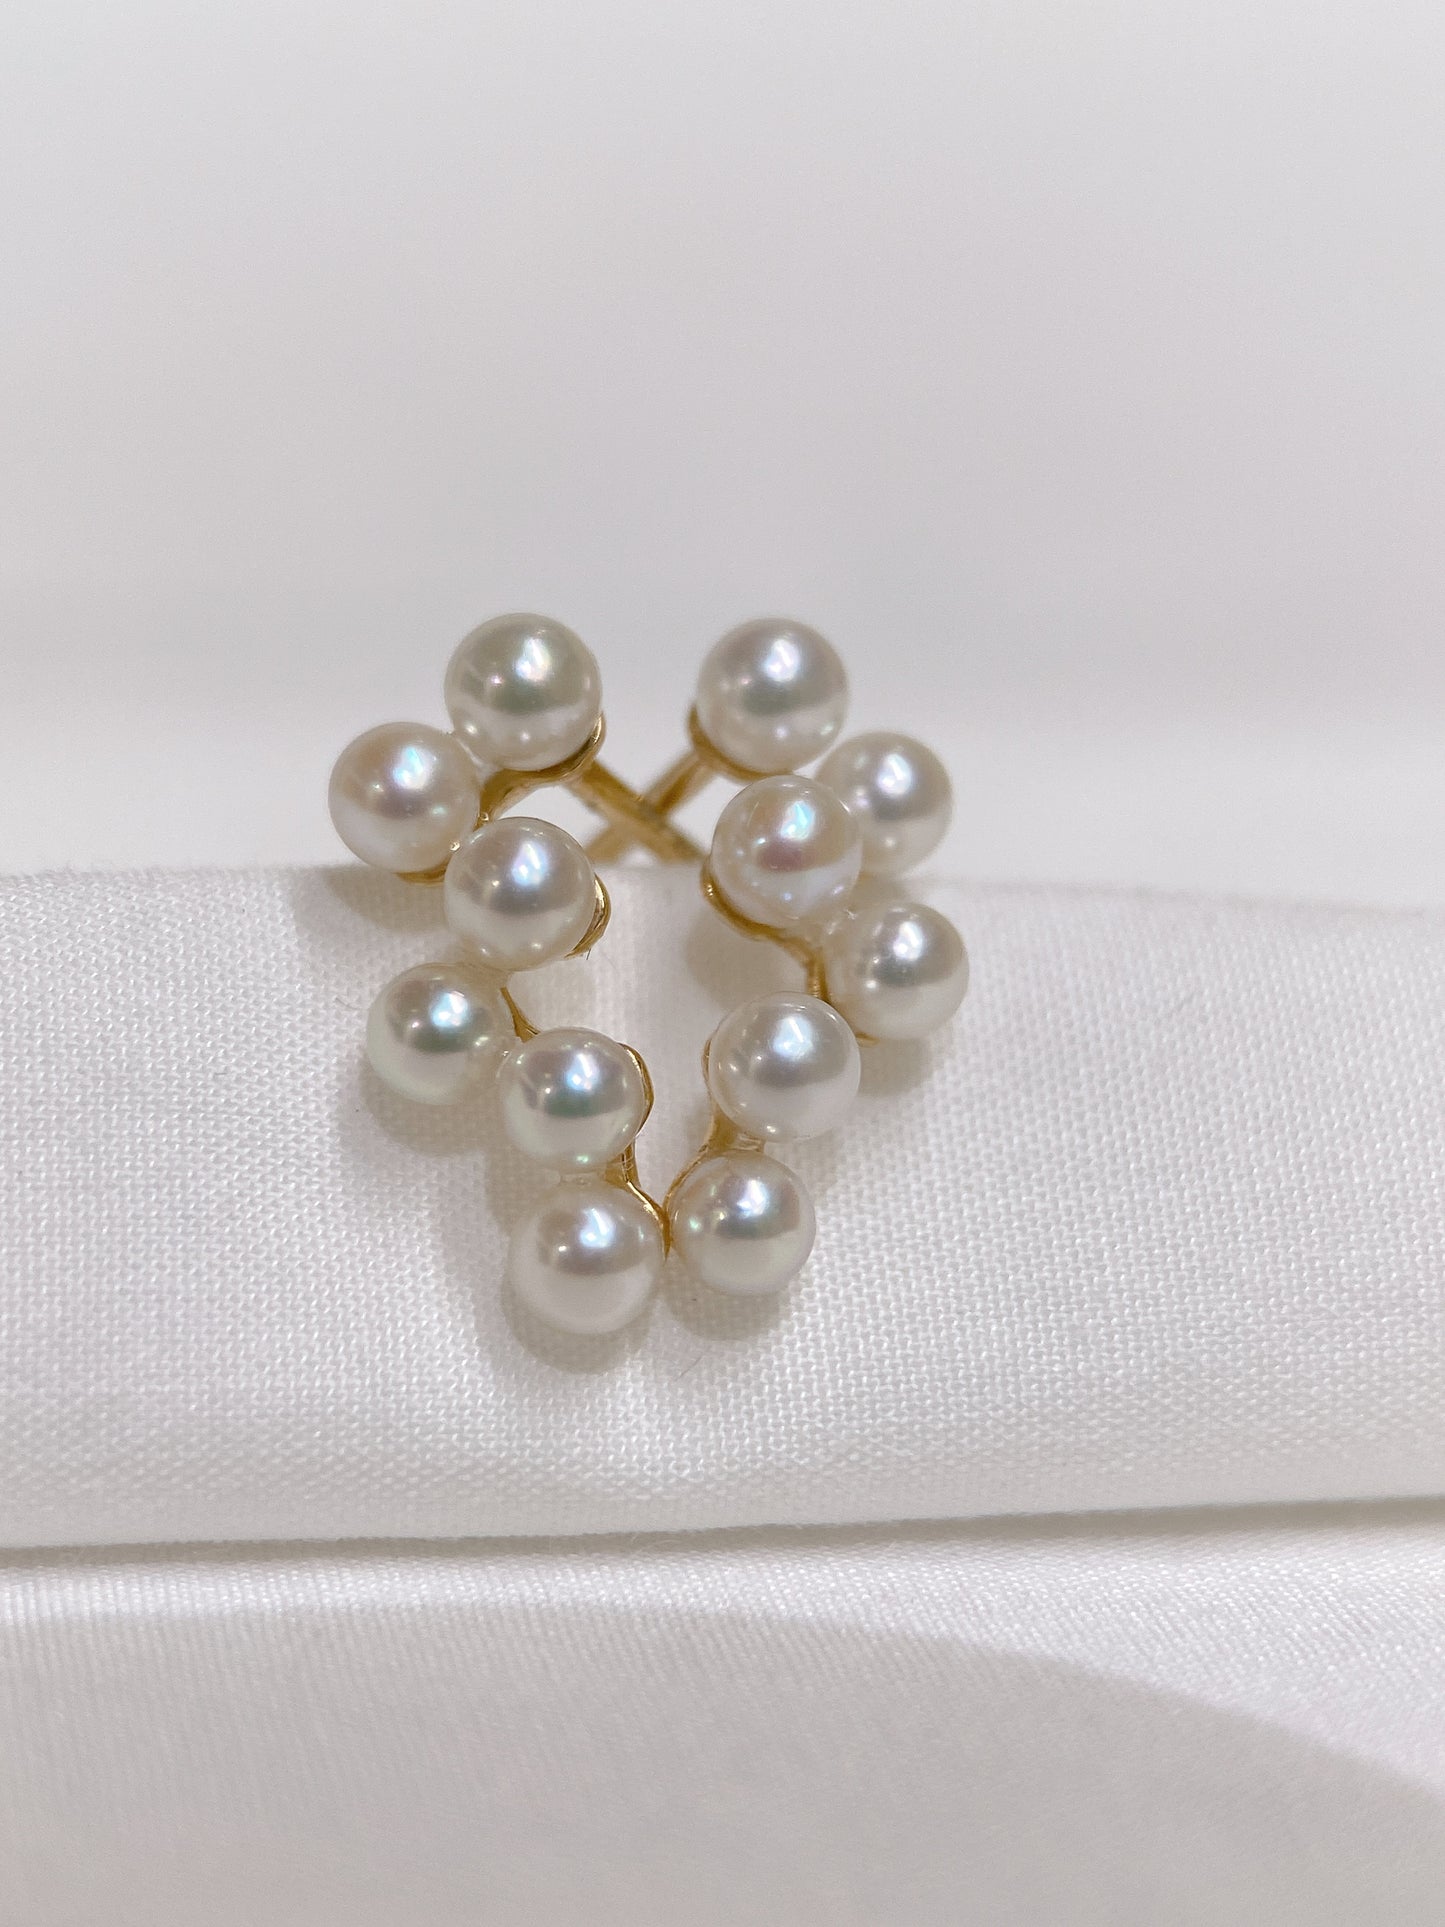 Grape Shape Akoya Pearl Earrings in 18K Yellow Gold,3-3.5mm